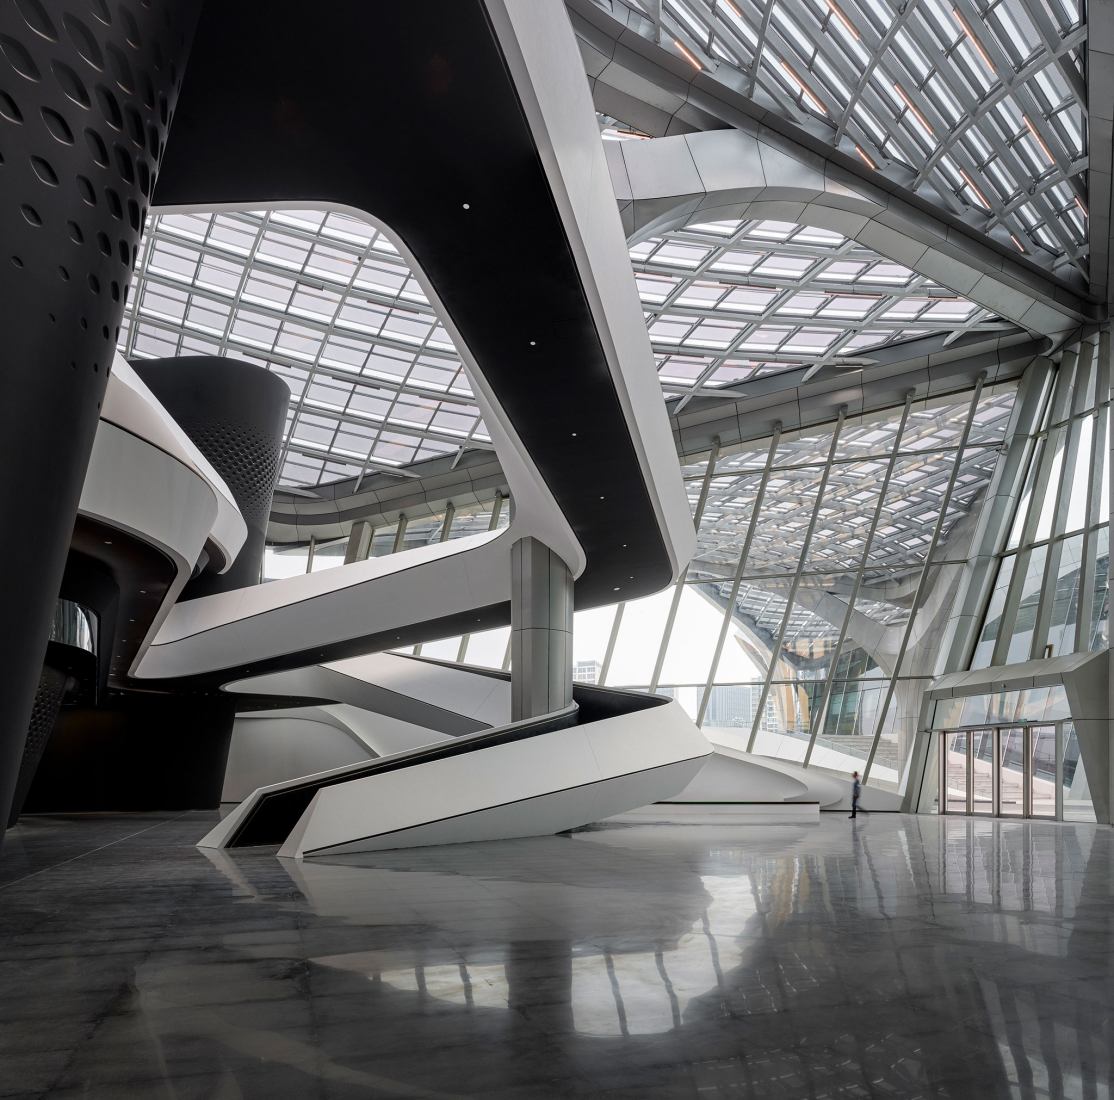 Centro Cívico de artes Zhuhai Jinwan por Zaha Hadid Architects. Fotografía por Virgile Simon Bertrand.